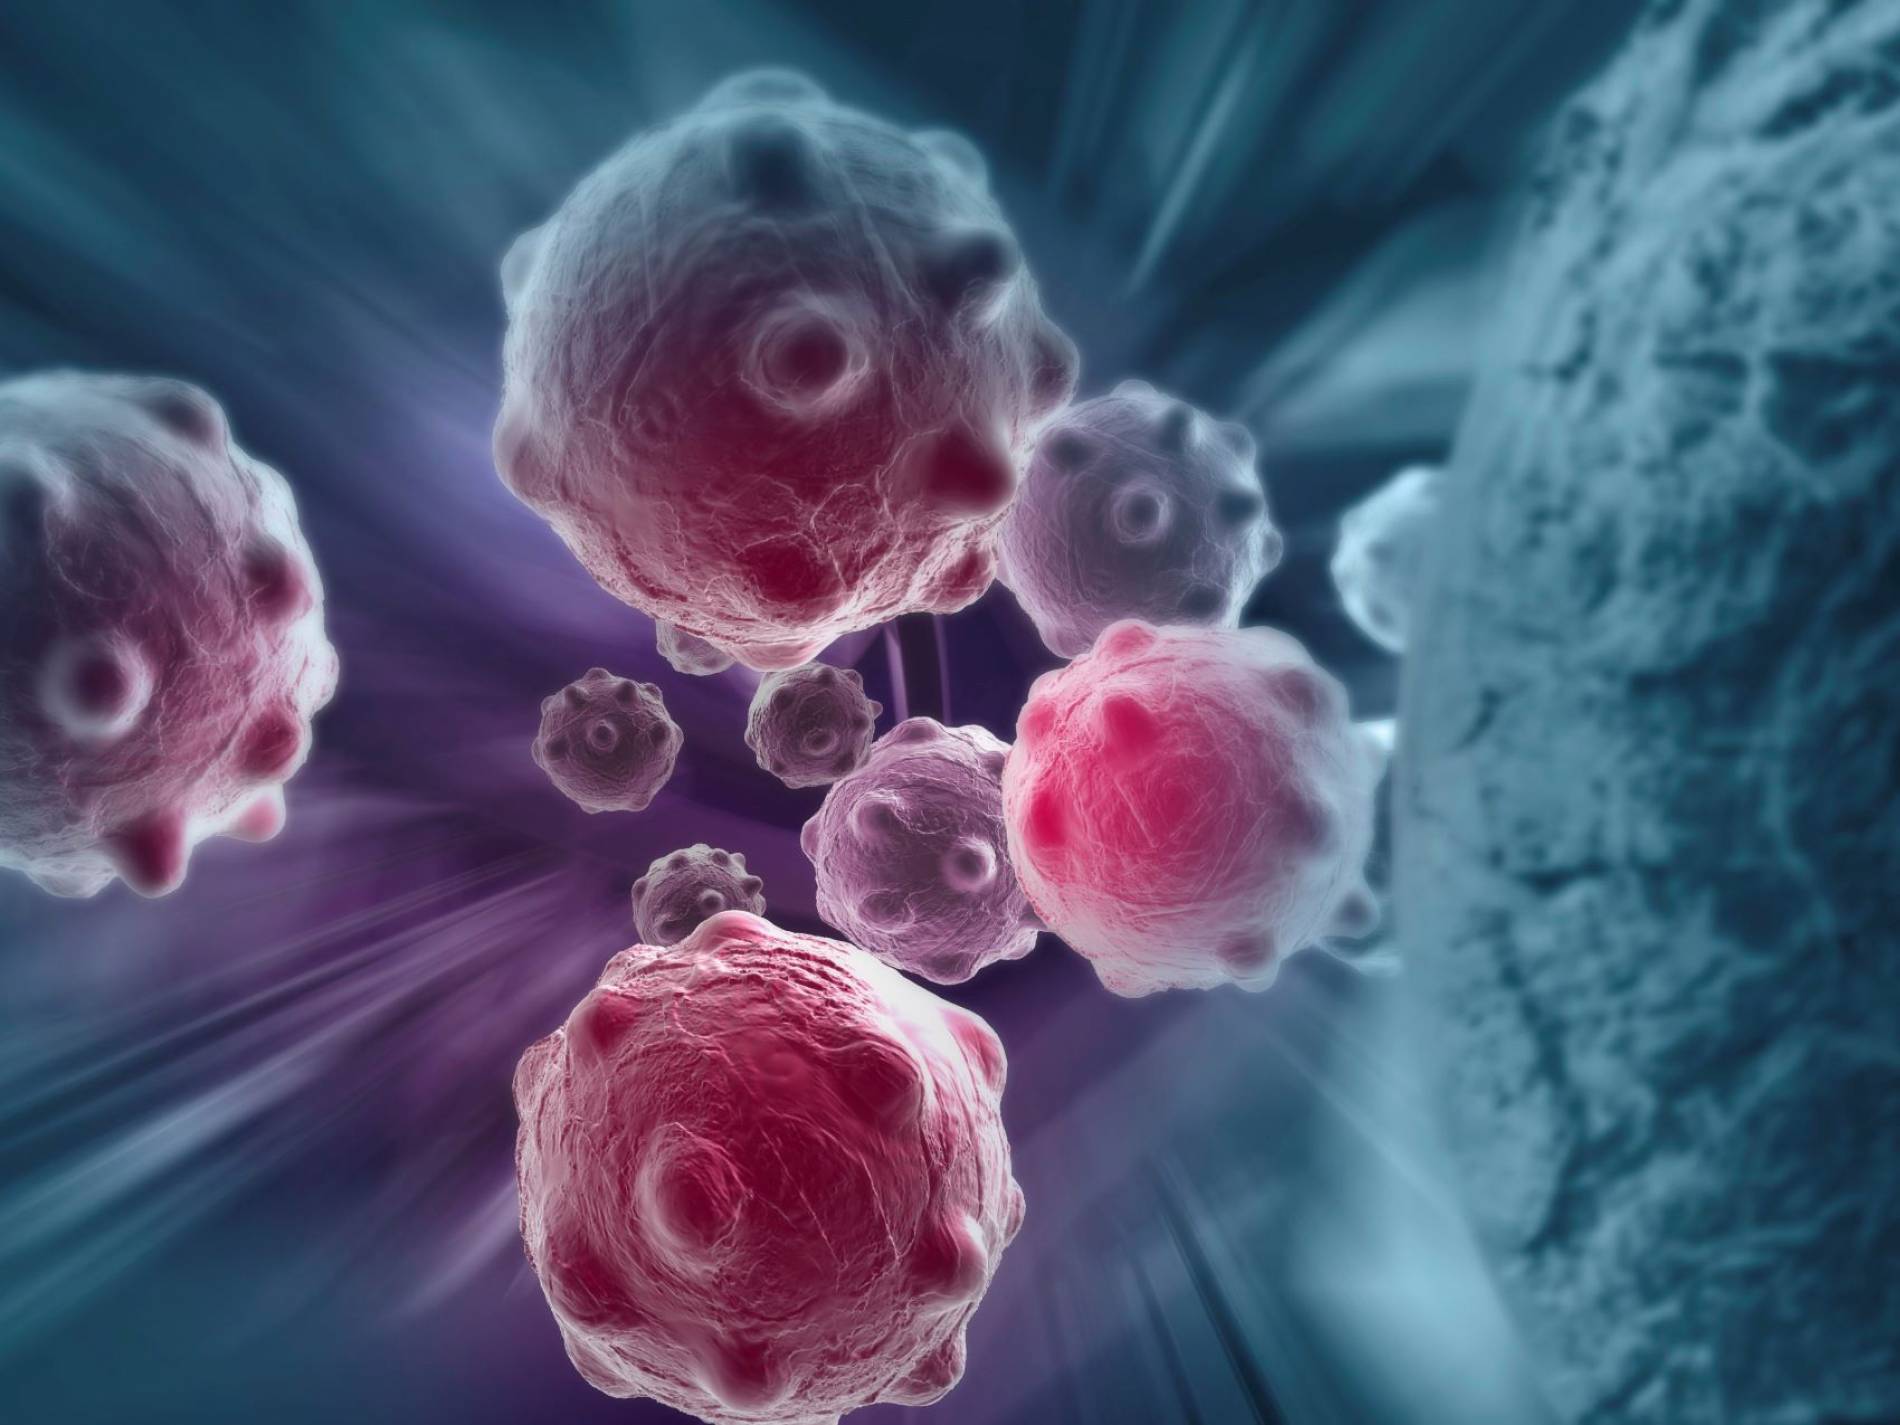 Καρκίνος: Επιστήμονες αναπτύσσουν εμφύτευμα για να τον εξαλείφουν μέσα σε 60 ημέρες